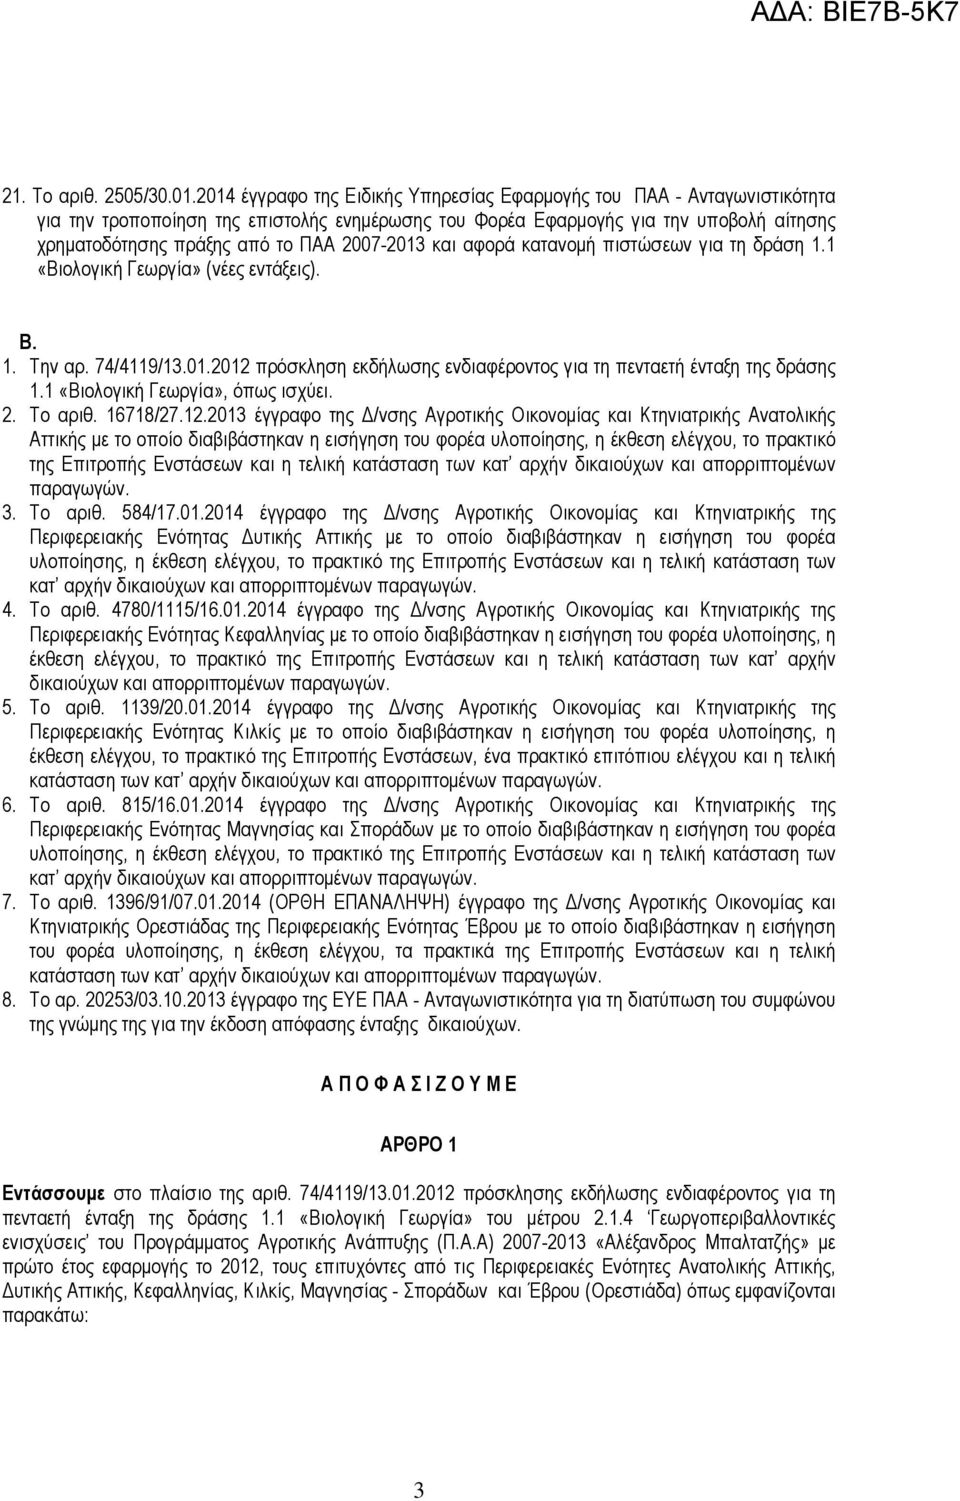 2007-2013 και αφορά κατανομή πιστώσεων για τη δράση 1.1 «Βιολογική Γεωργία» (νέες εντάξεις). Β. 1. Την αρ. 74/4119/13.01.2012 πρόσκληση εκδήλωσης ενδιαφέροντος για τη πενταετή ένταξη της δράσης 1.